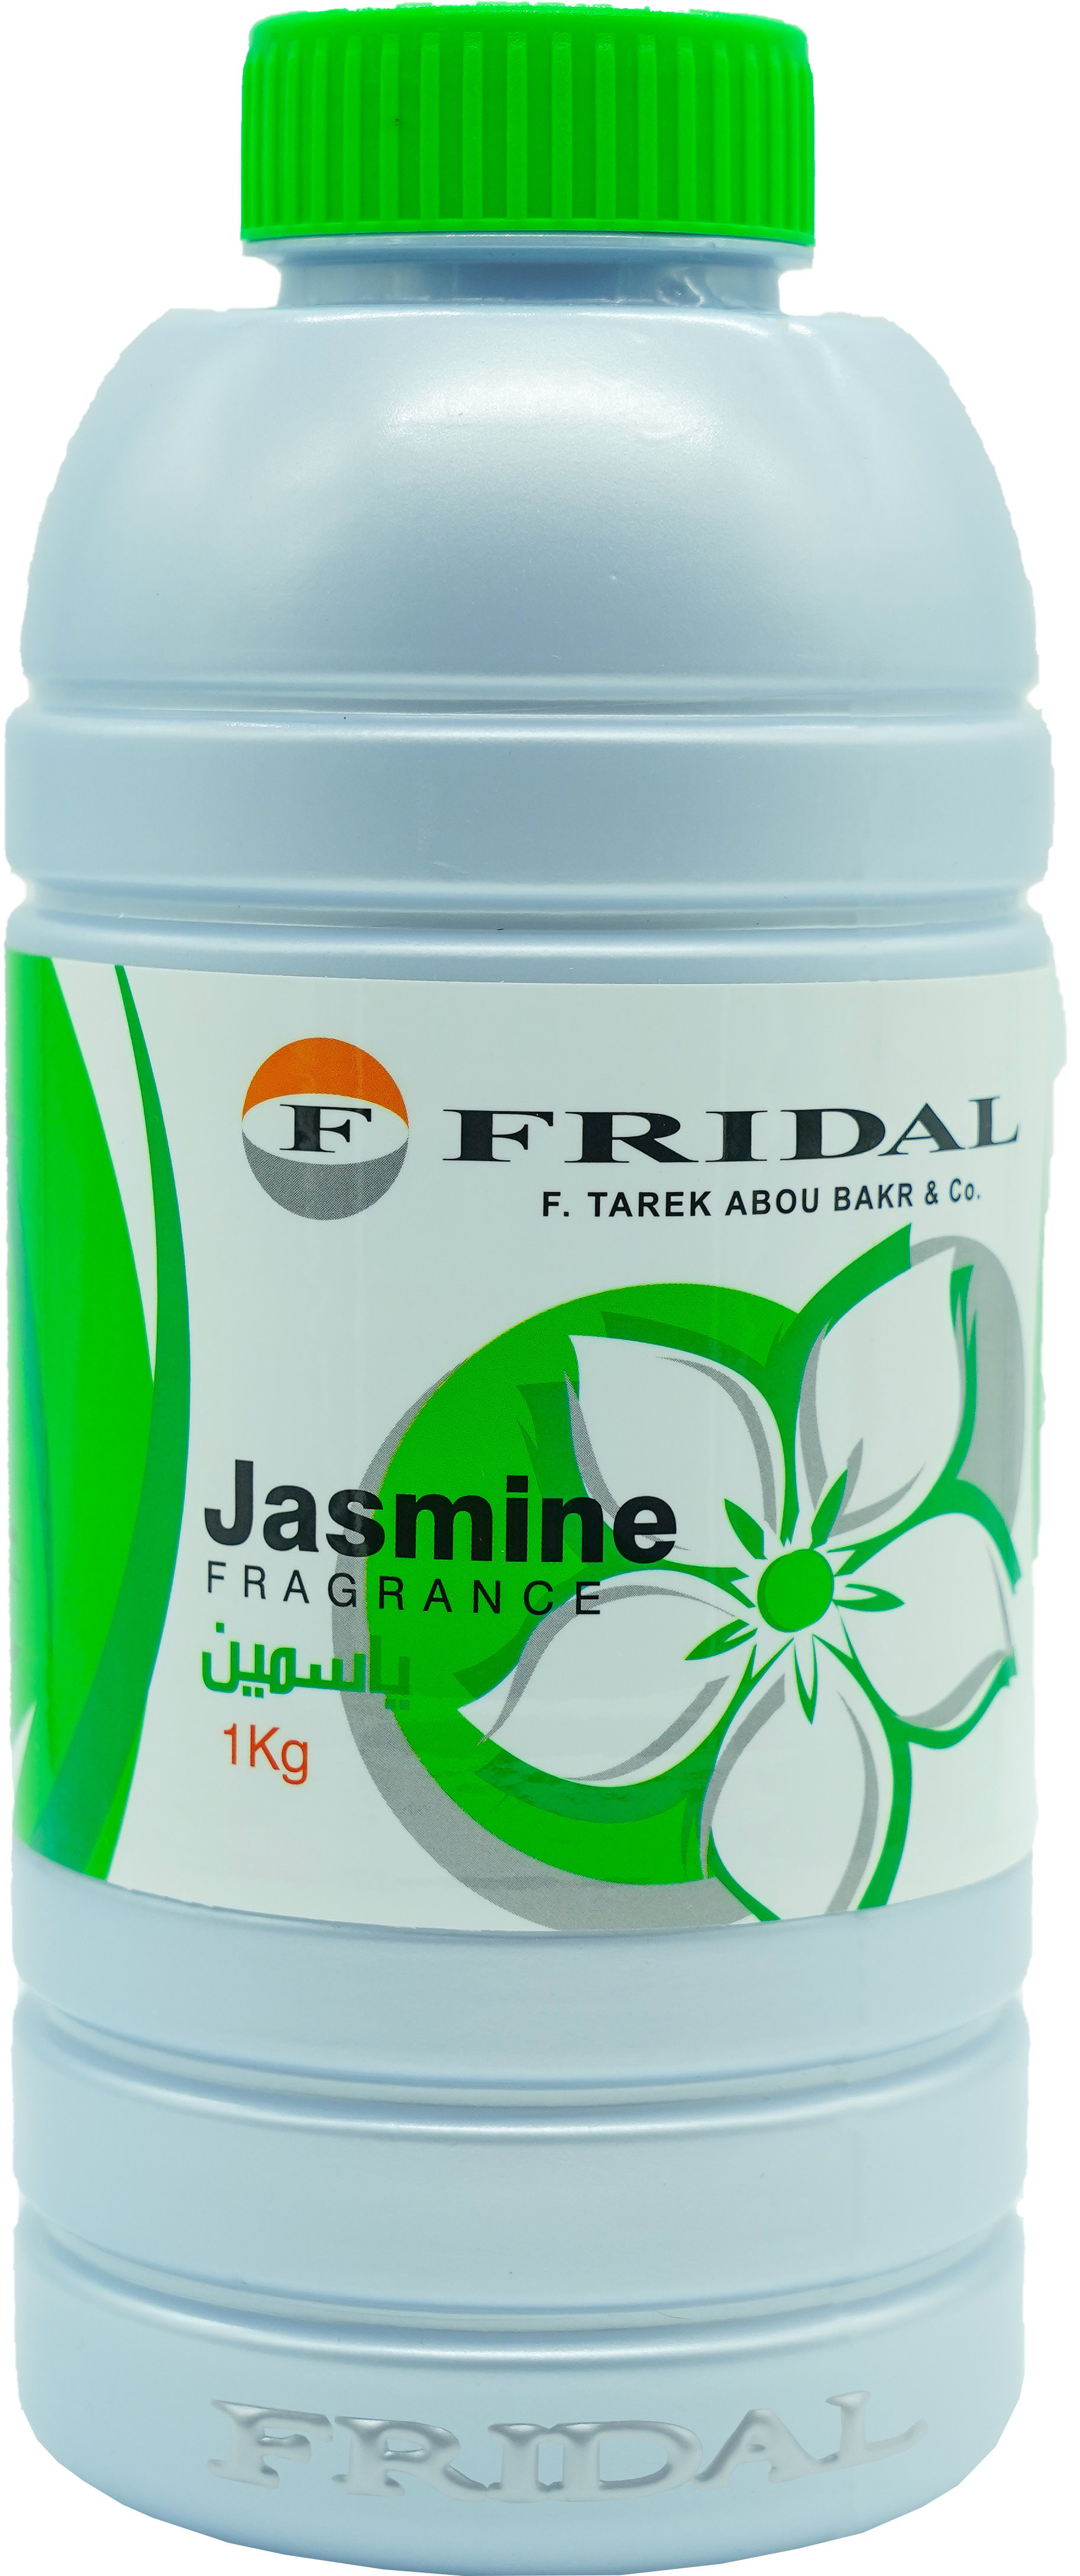 Multi-purpose usage Fragrance "Jasmine 1kg"